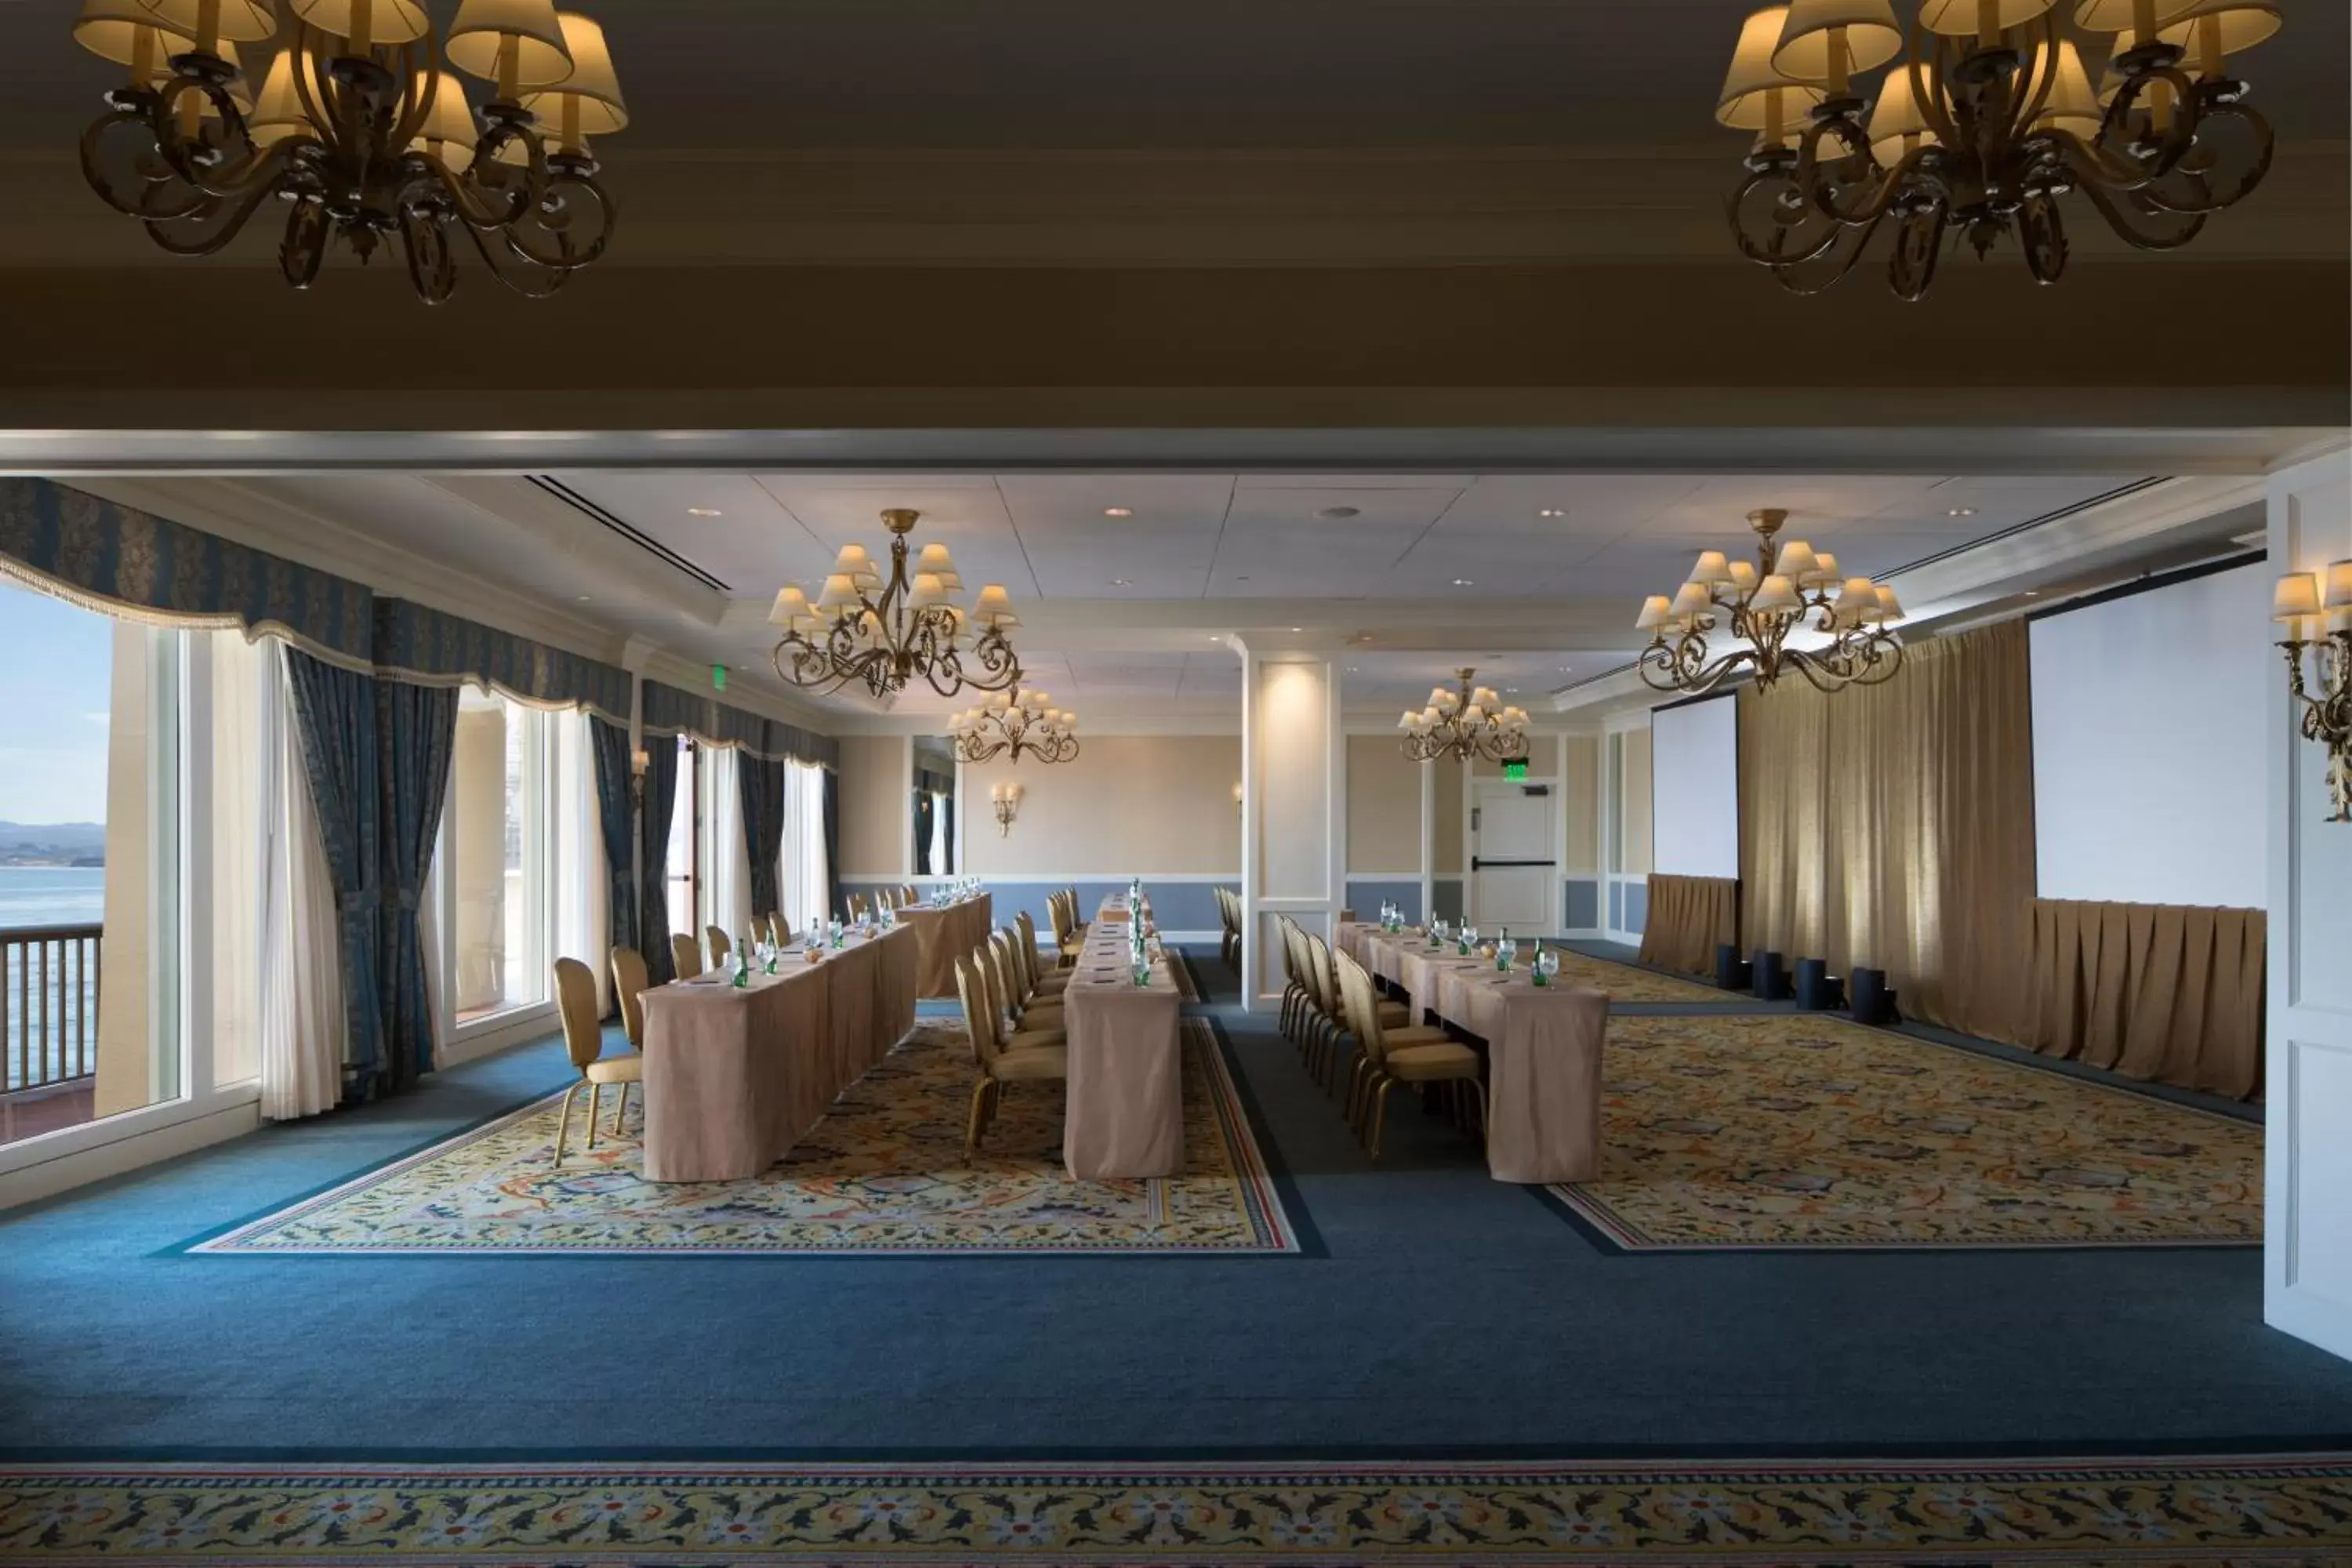 Banquet/Function facilities, Banquet Facilities in Monterey Plaza Hotel & Spa